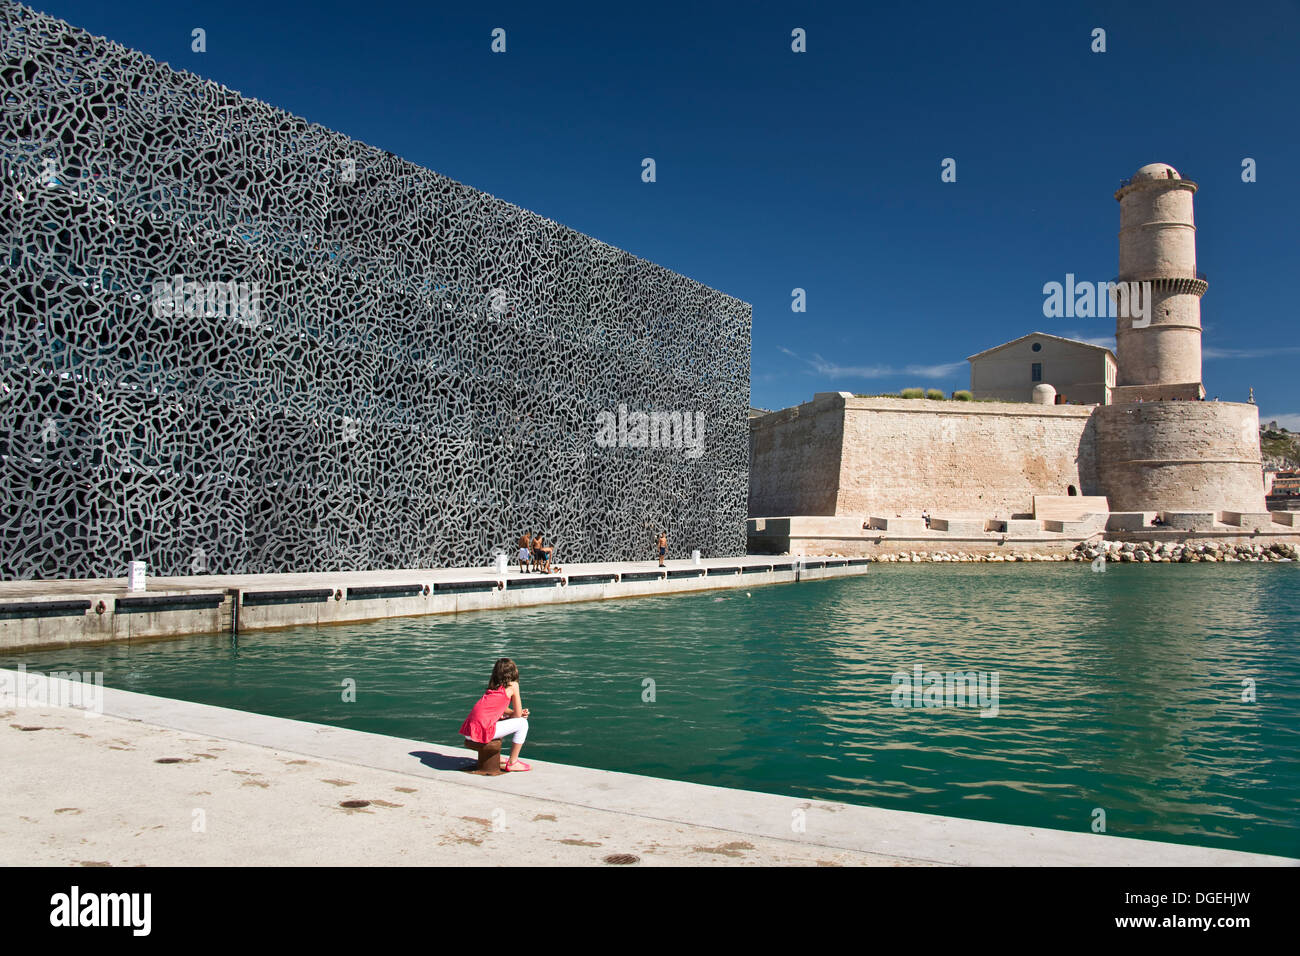 Le Fort Saint-Jean, derrière le MUCEM, musée des Civilisations de l'Europe  et de la Méditerranée - Marseille, France Photo Stock - Alamy